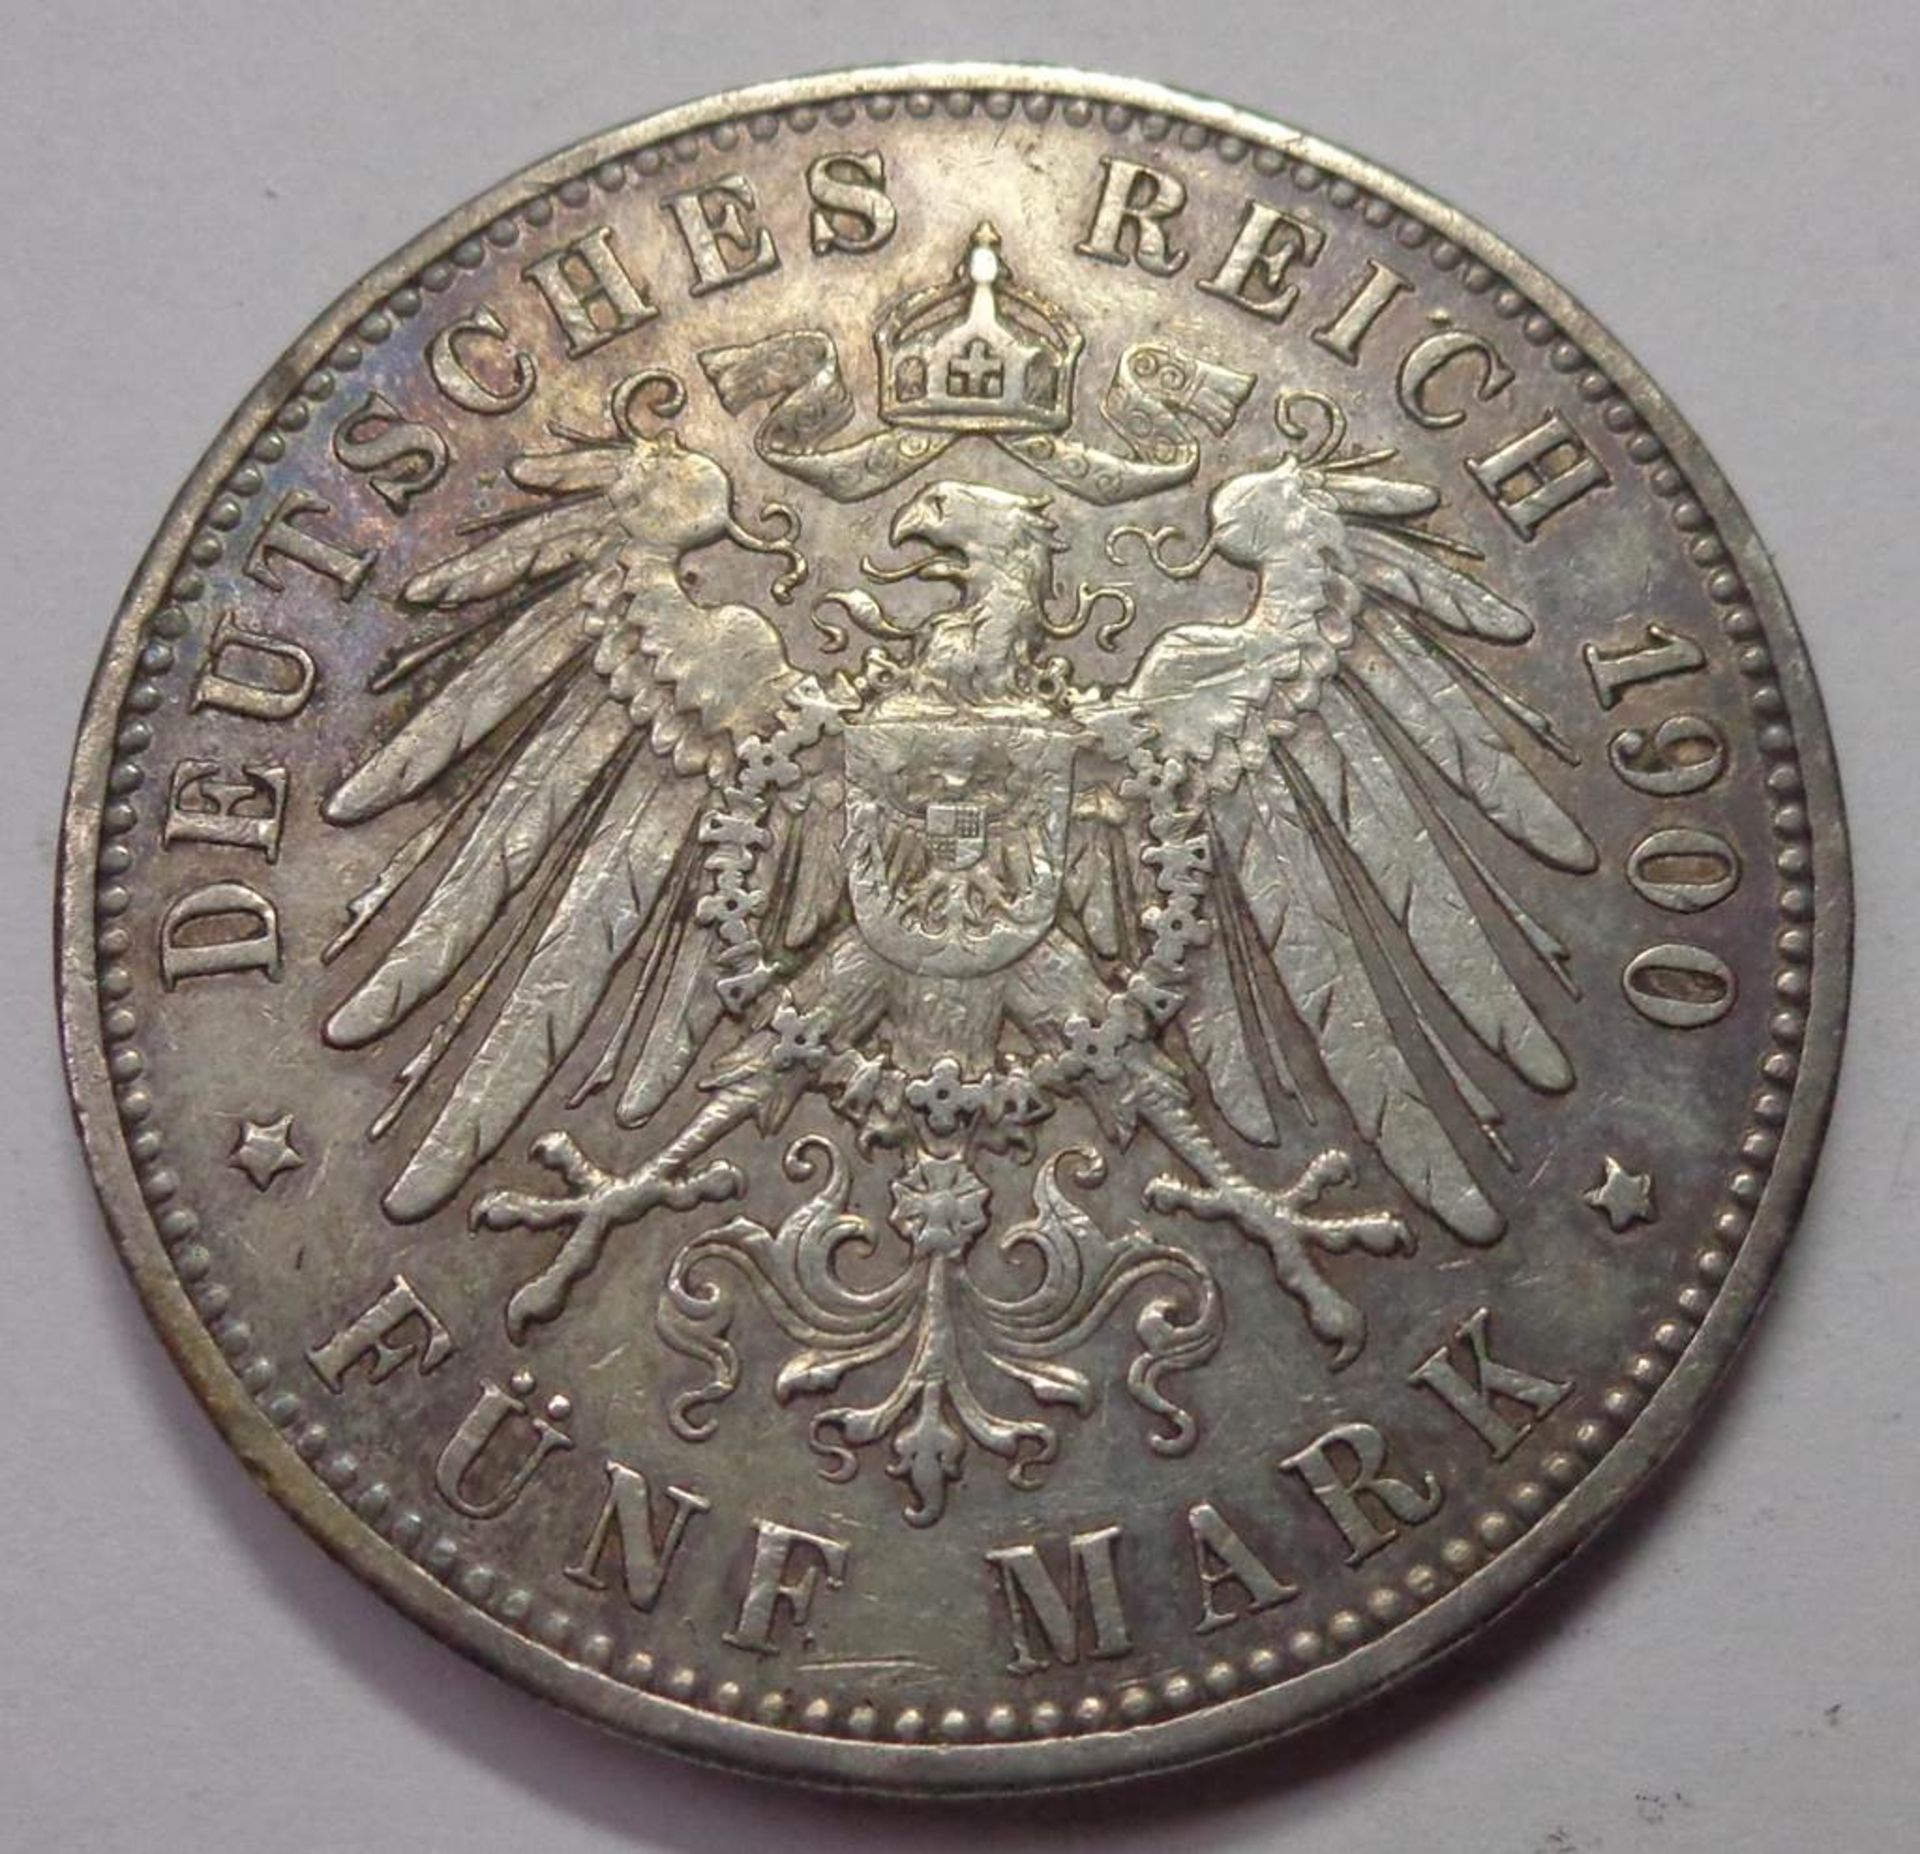 Fünf Mark, Deutsches Reich 1900 E, Albert König v. Sachsen, ss, 27,71 g - Bild 2 aus 2